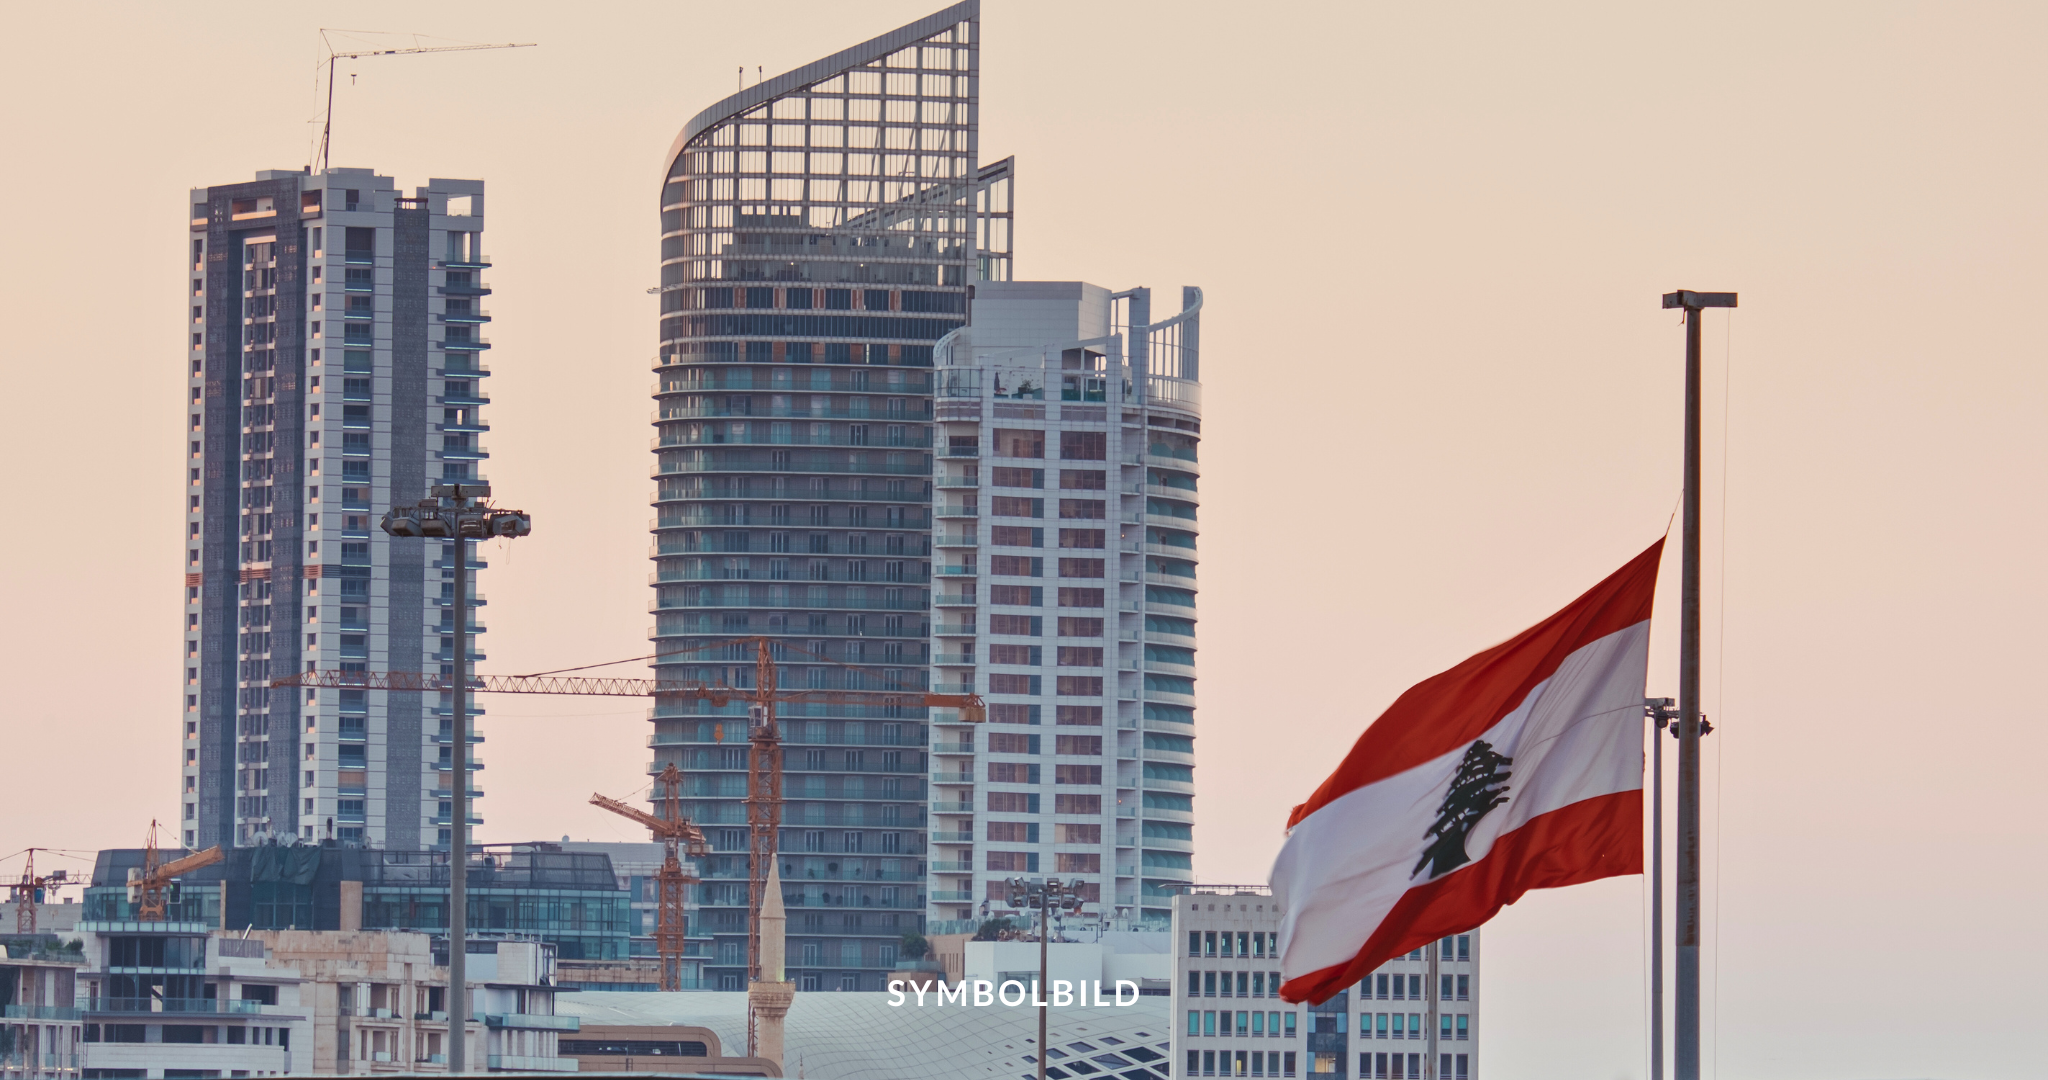 Das Bild zeigt eine Stadtsilhouette während der Dämmerung oder des Sonnenuntergangs. Mehrere im Bau befindliche Hochhäuser sind zu sehen, mit Kränen, die sich gegen den Himmel abheben. Im Vordergrund befindet sich ein Fahnenmast mit einer Libanon-Flagge. Symbolbild